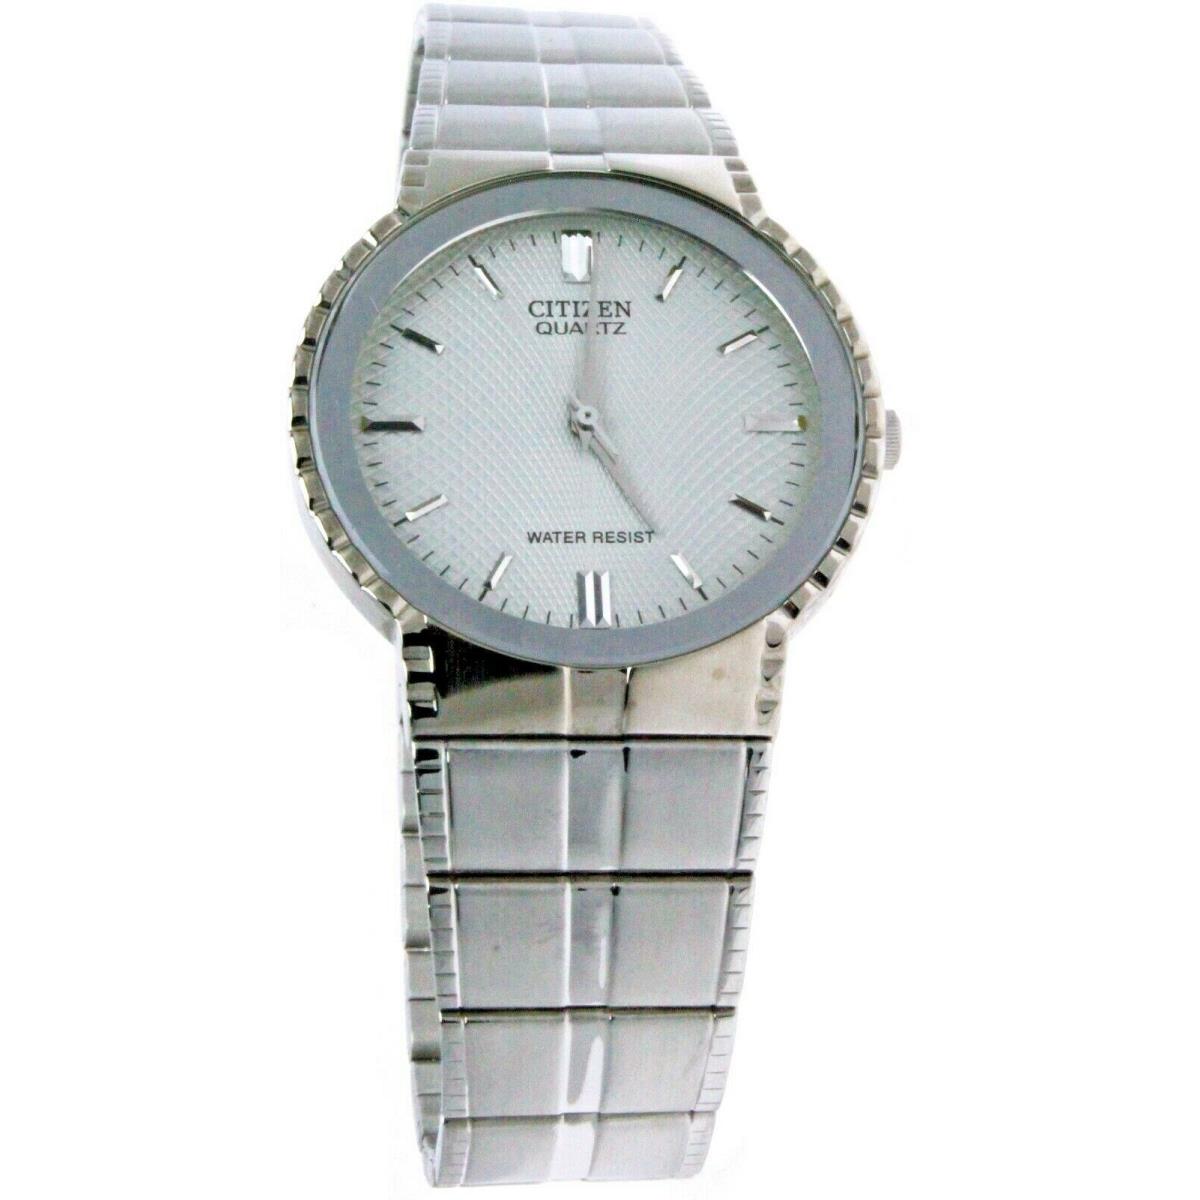 Unique Citizen 35 mm Round White S. Steel Water Resistant Watch Wristwatch